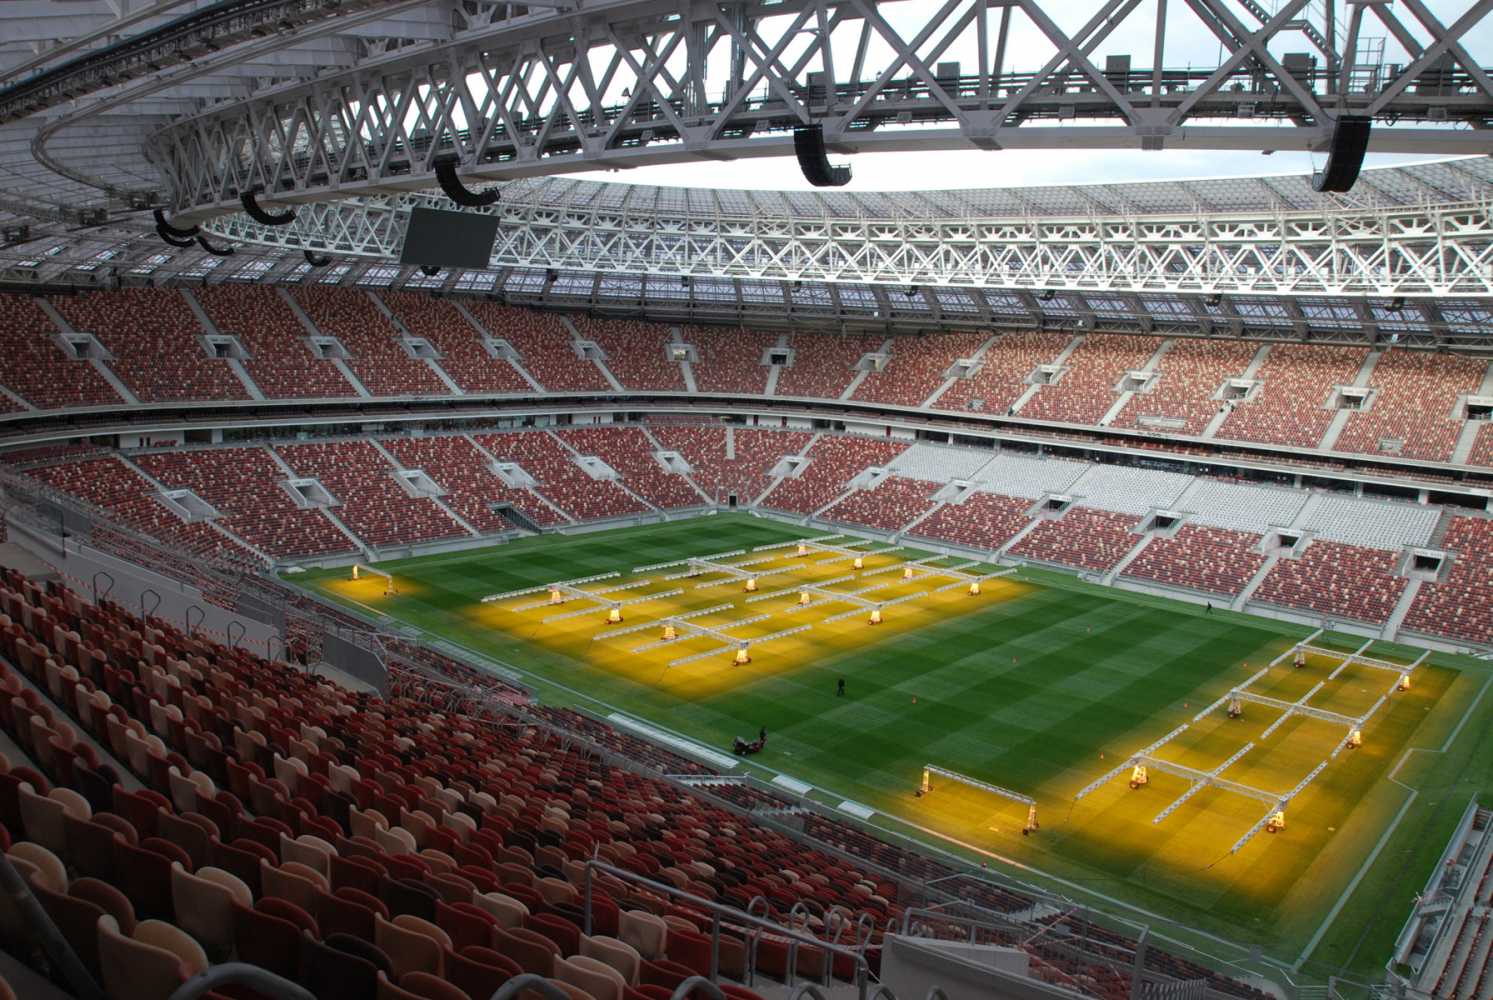 Moscow’s Luzhniki Stadium